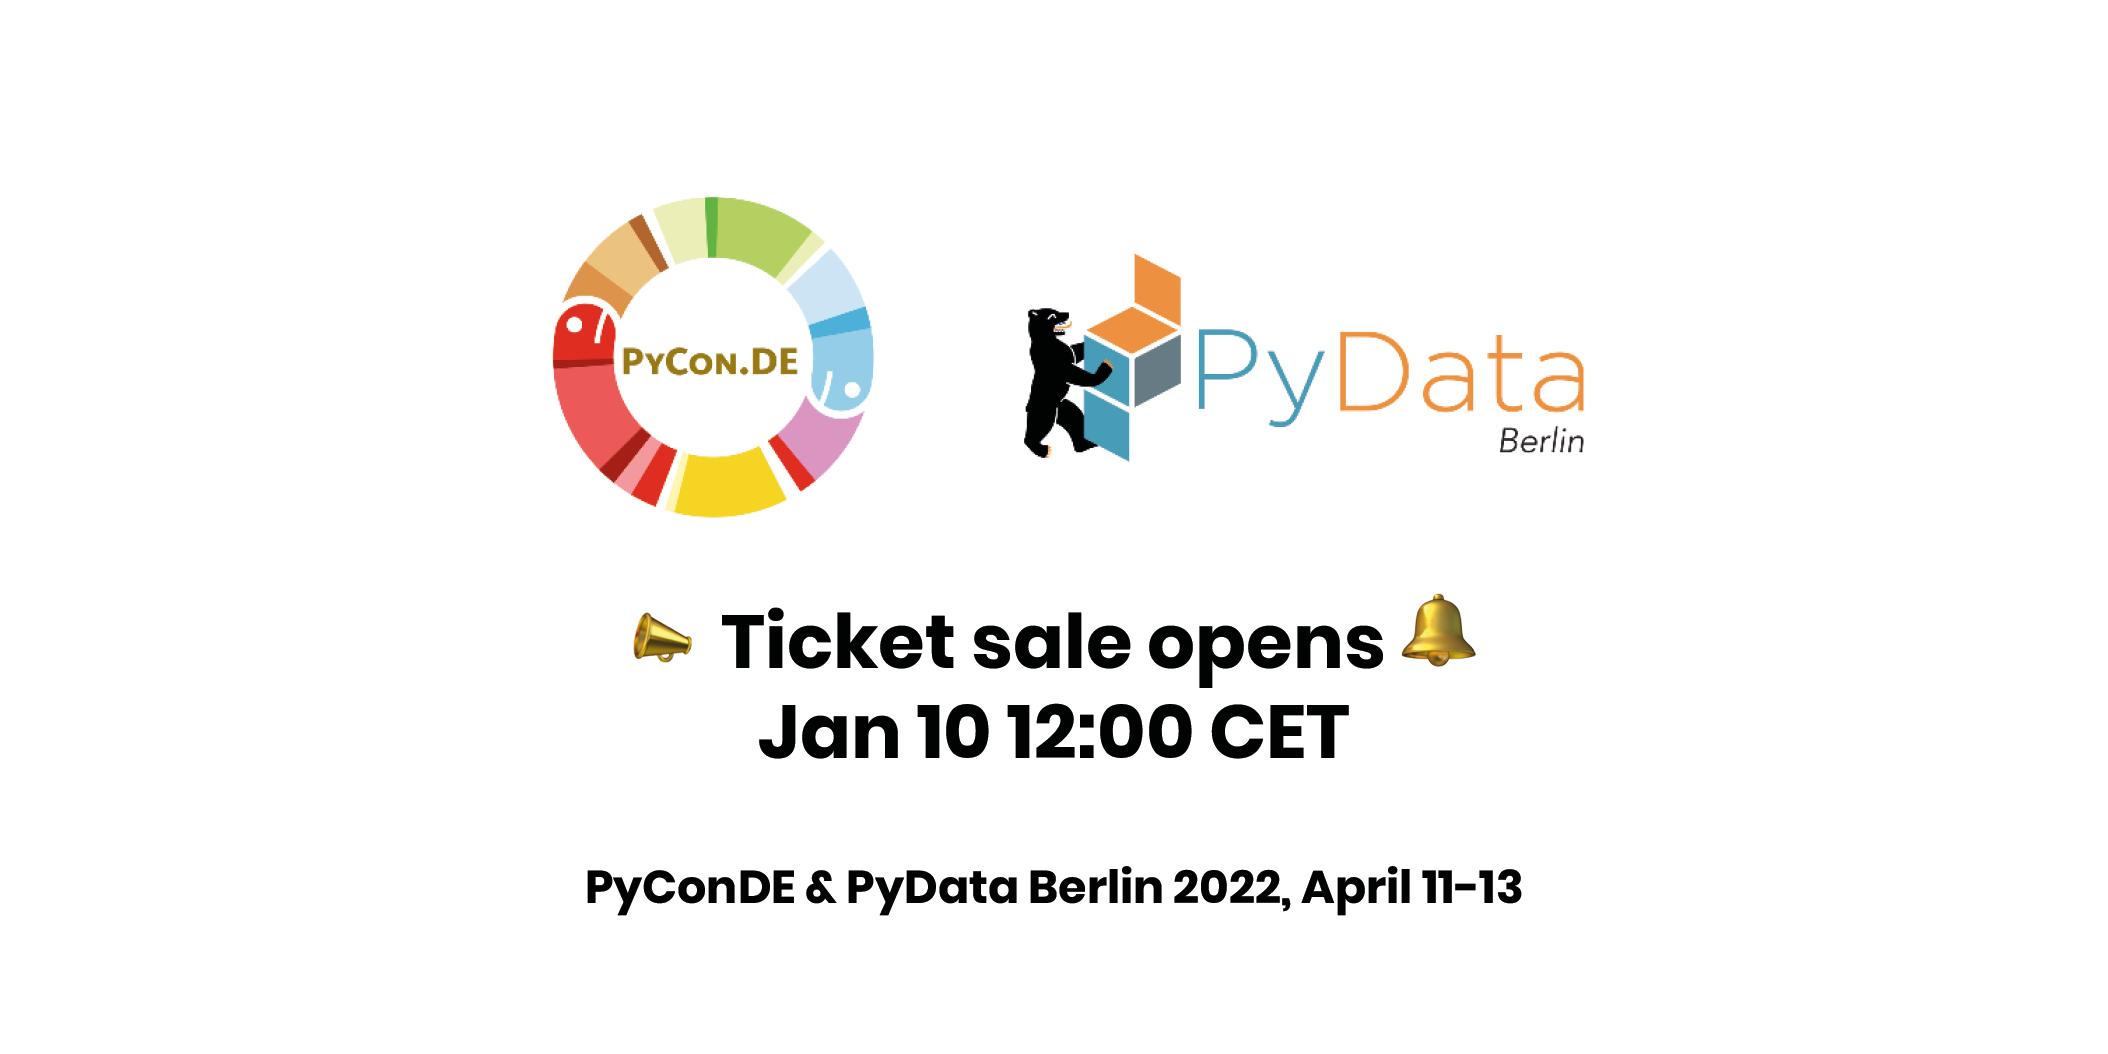 PyConDE & PyData Berlin 2022